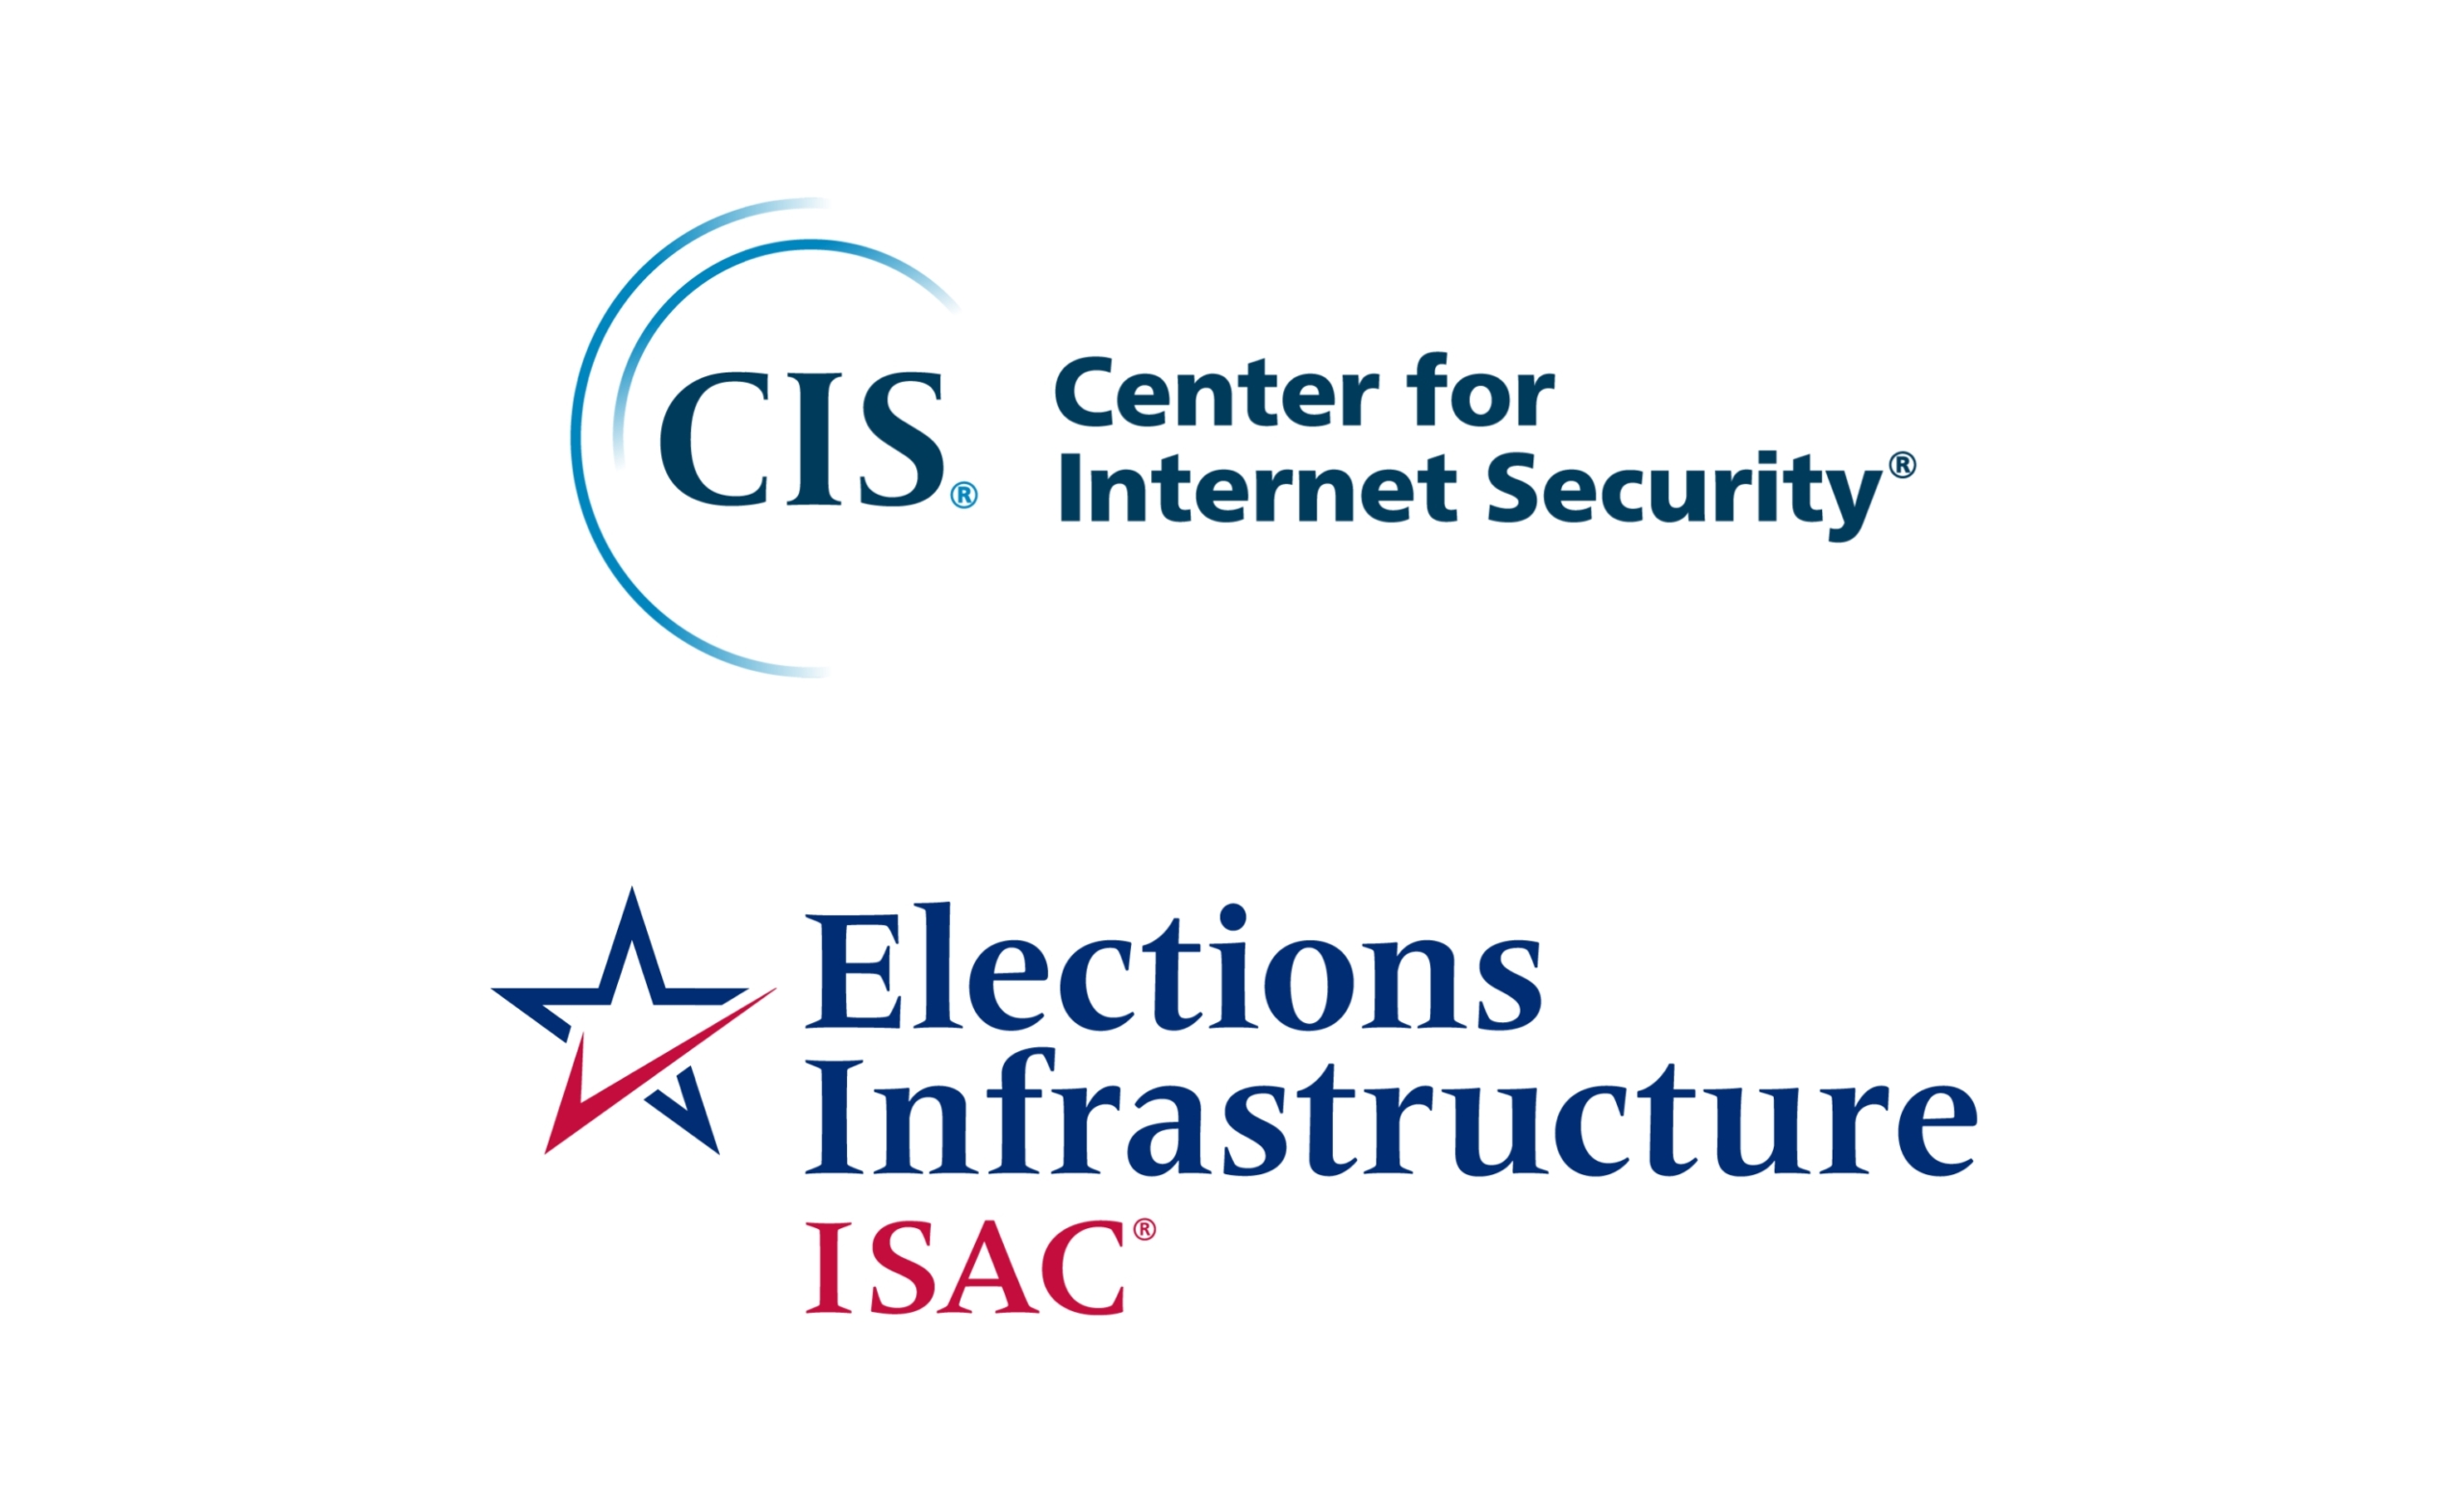 CIS EI-ISAC logo